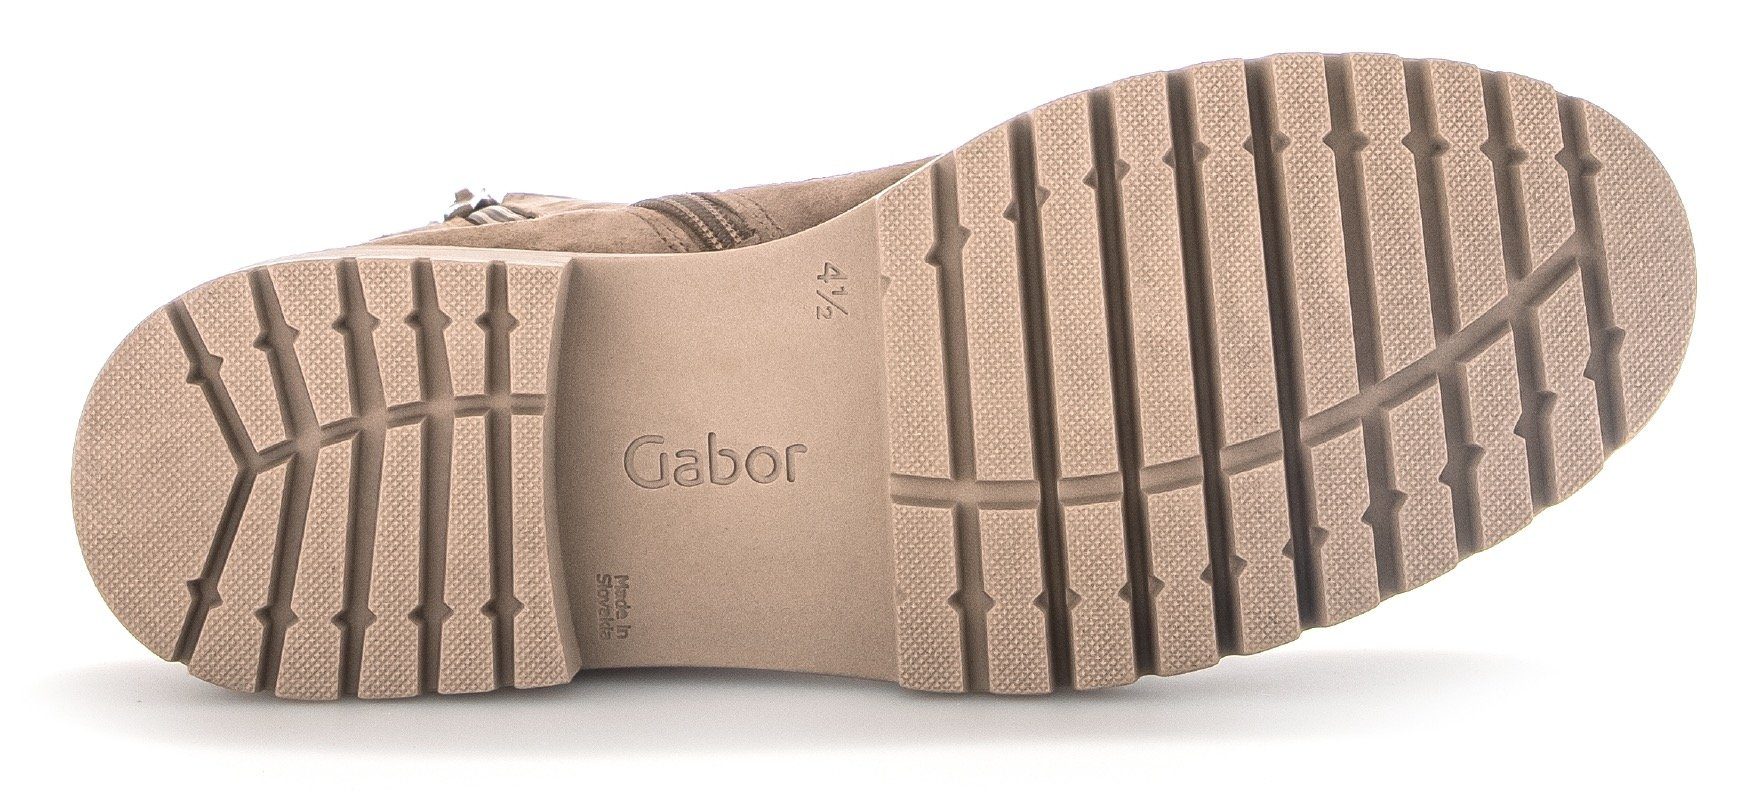 (muschel) Schnürstiefelette in weit) H Gabor Davos (sehr Schuhweite Beige